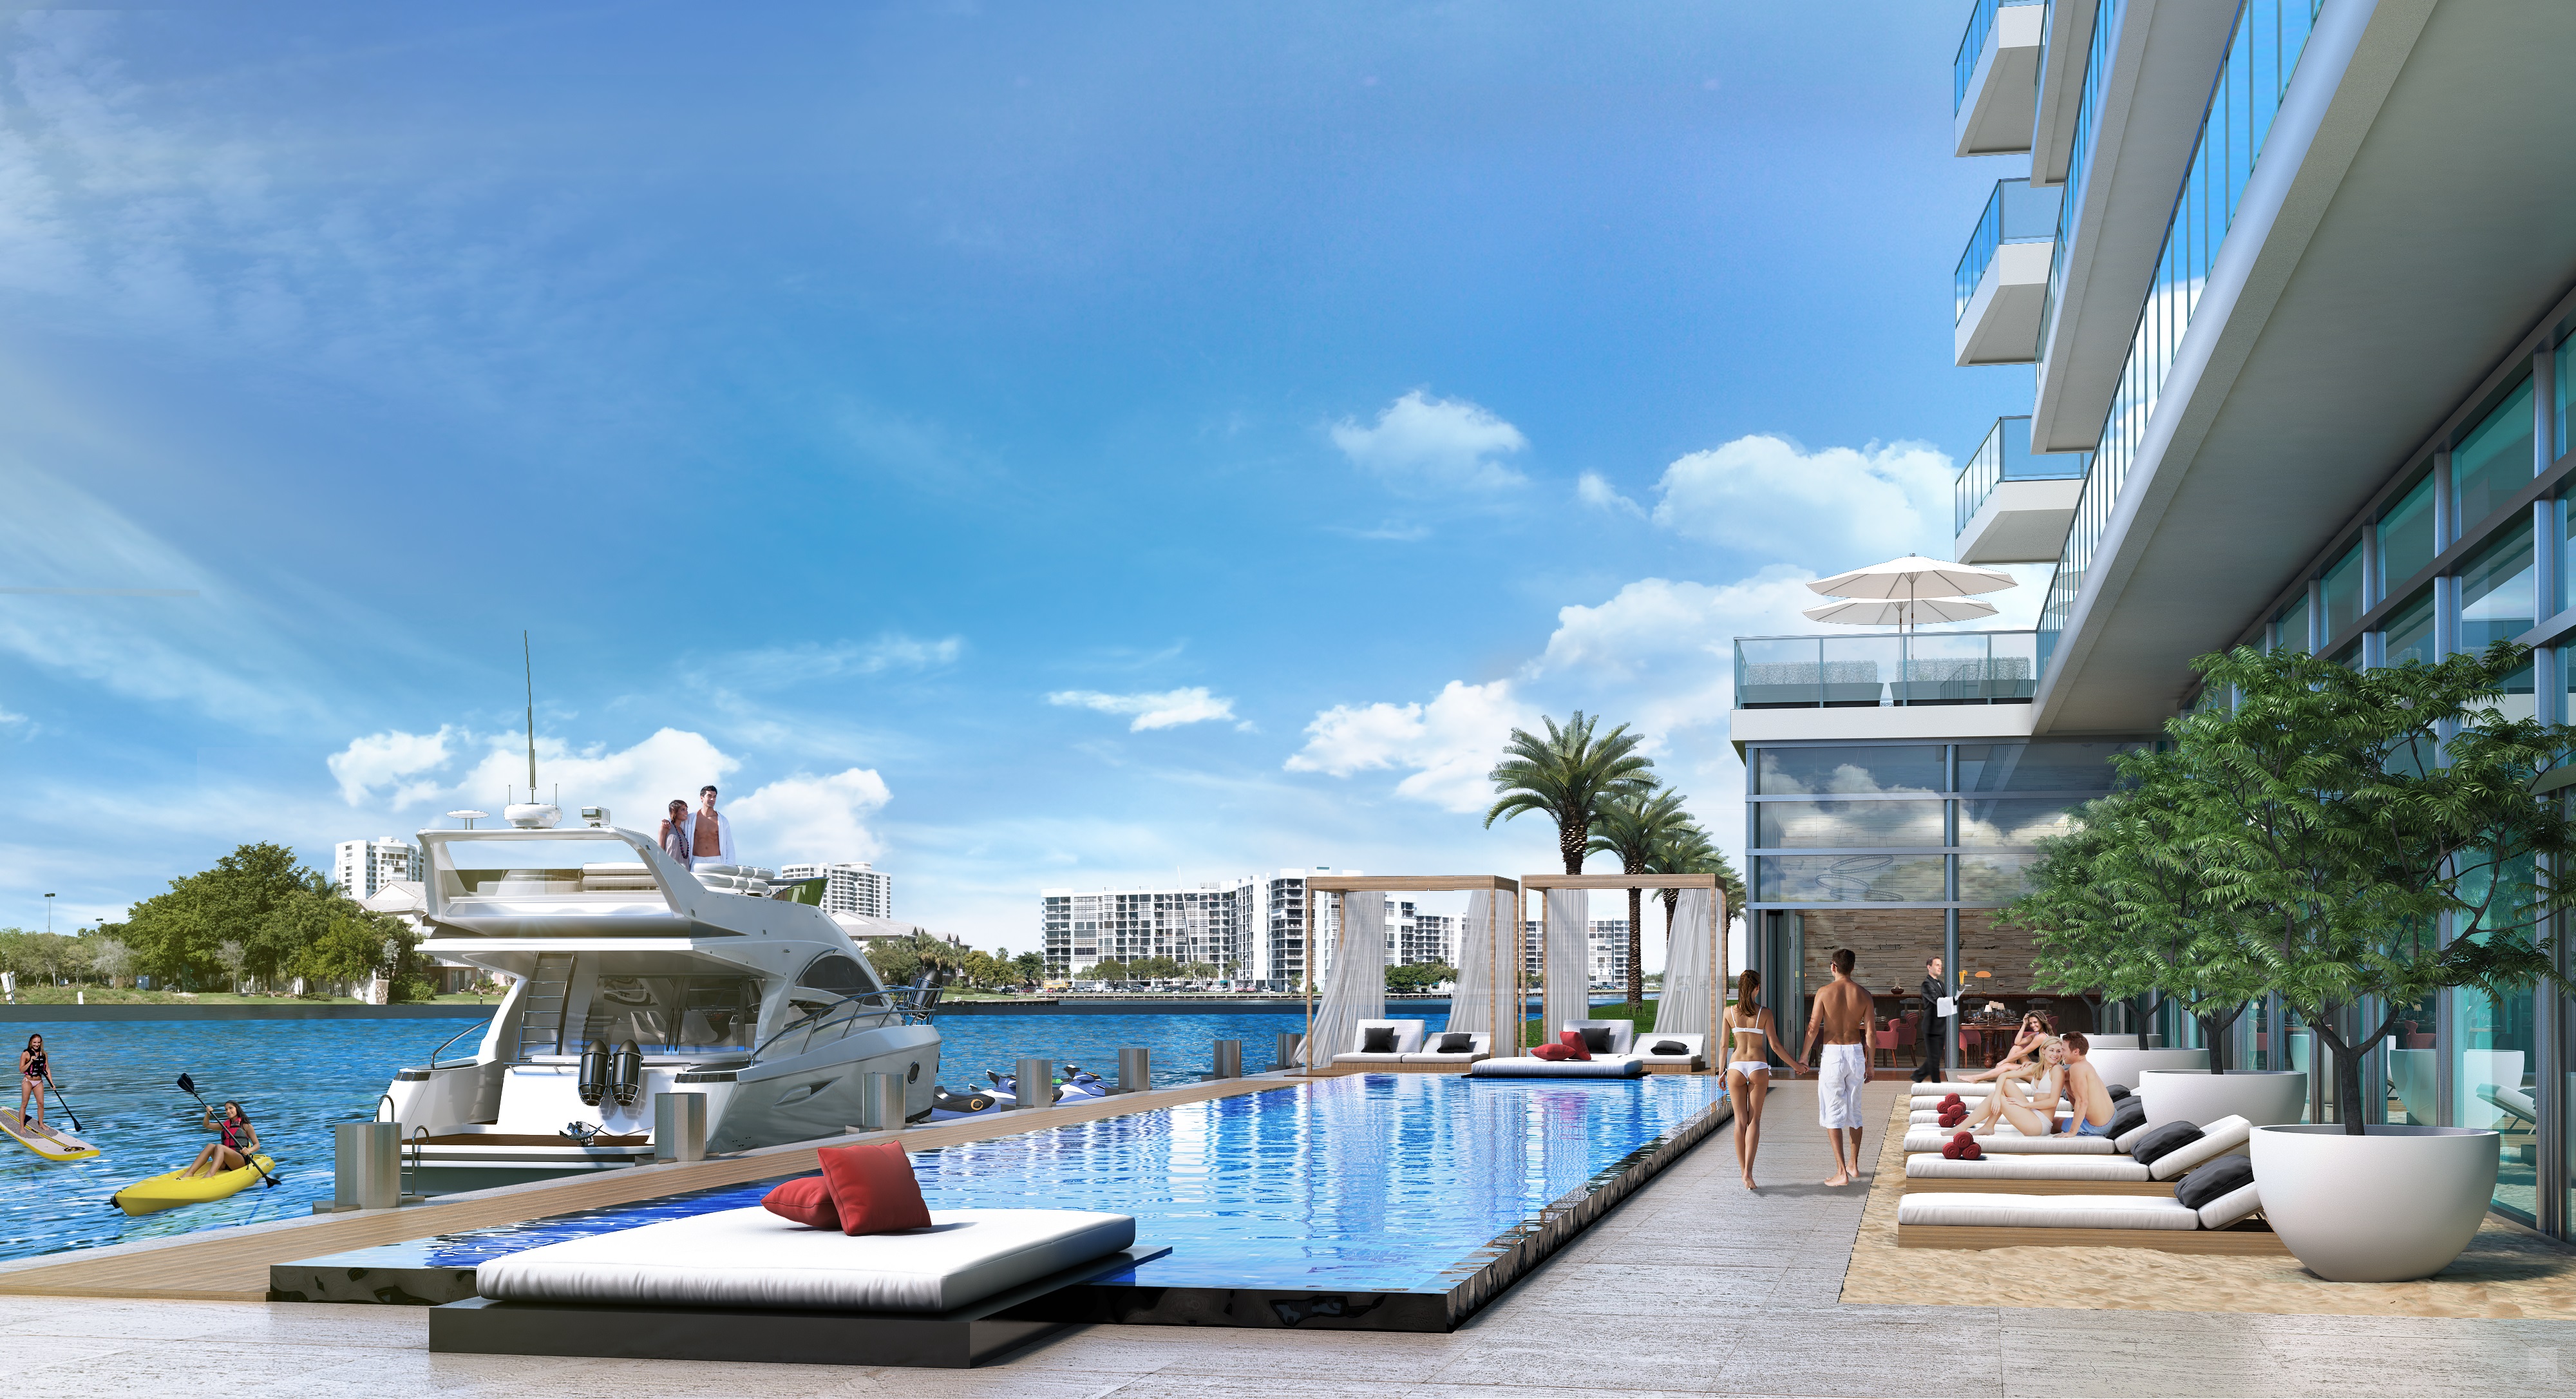 Hyde Beach House Resort Condominiums & Residences, Hollywood Beach, FL